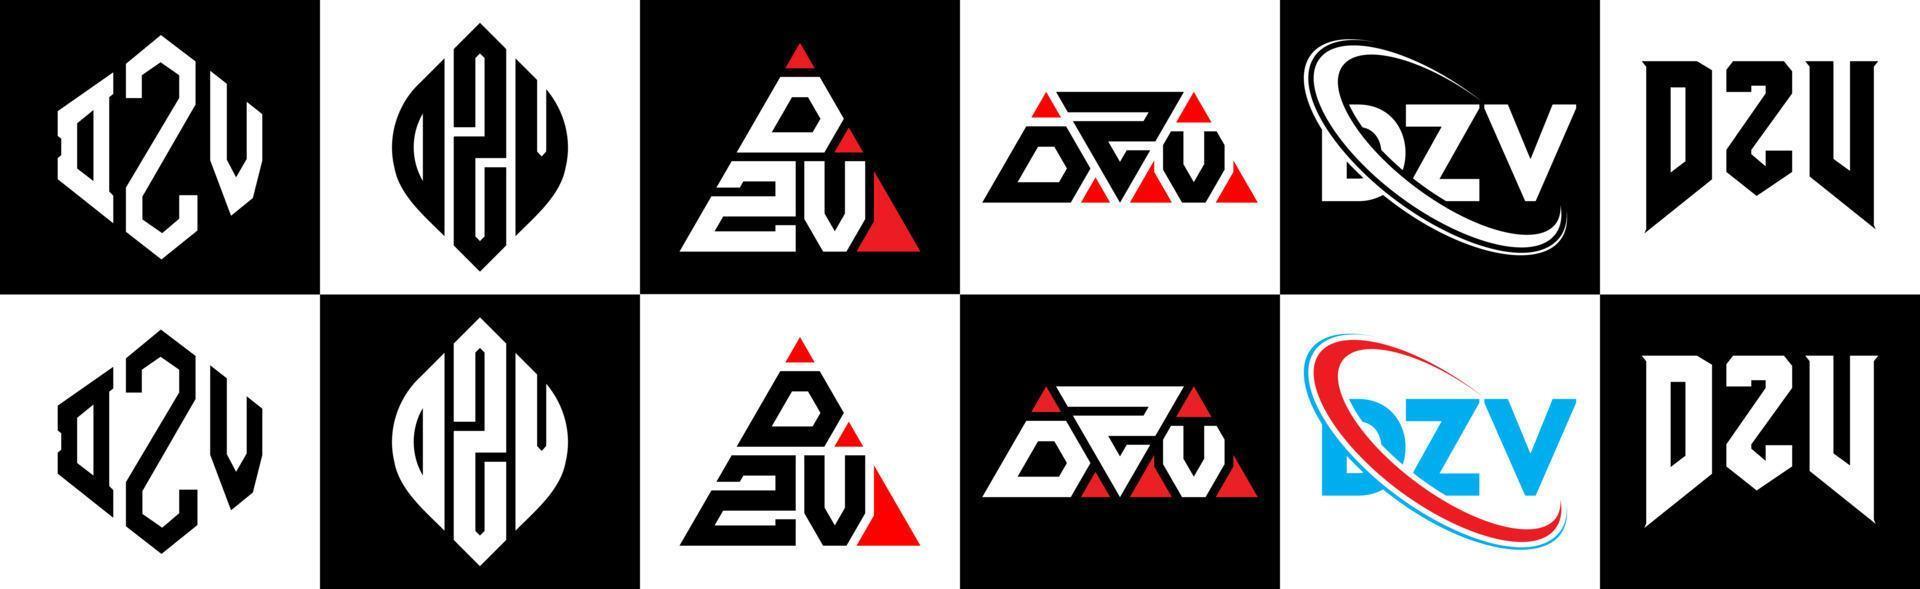 dzv-Buchstaben-Logo-Design in sechs Stilen. dzv-Polygon, Kreis, Dreieck, Sechseck, flacher und einfacher Stil mit schwarz-weißem Buchstabenlogo in einer Zeichenfläche. dzv minimalistisches und klassisches Logo vektor